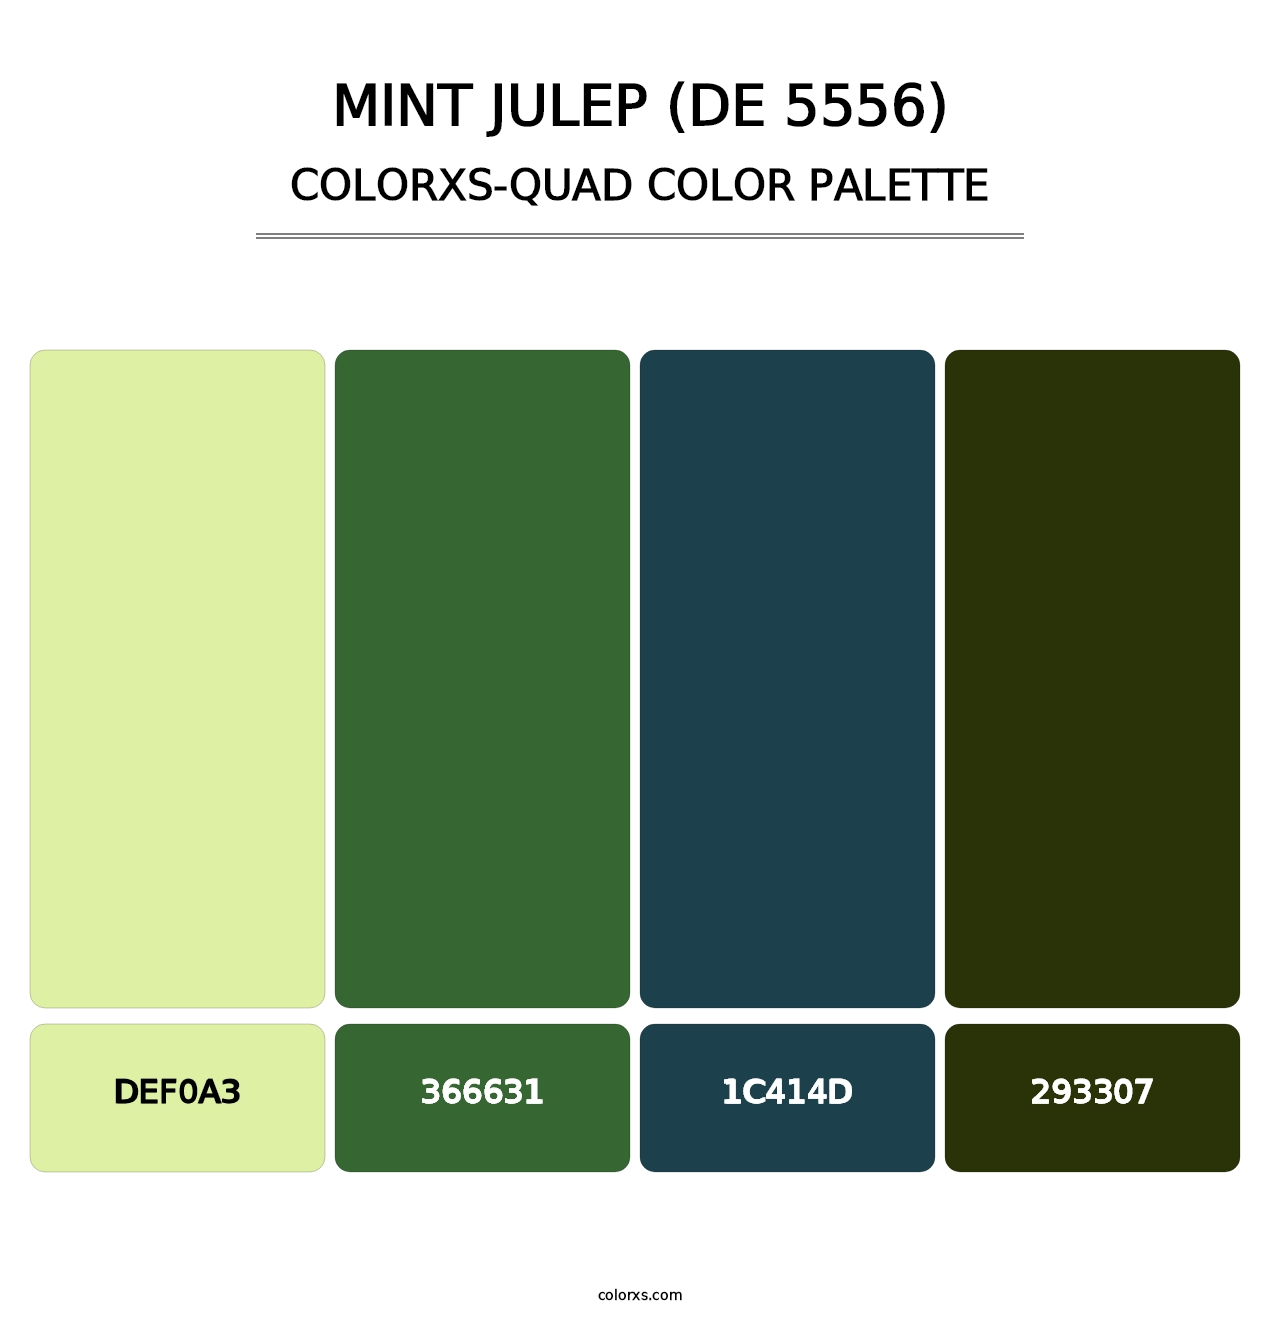 Mint Julep (DE 5556) - Colorxs Quad Palette